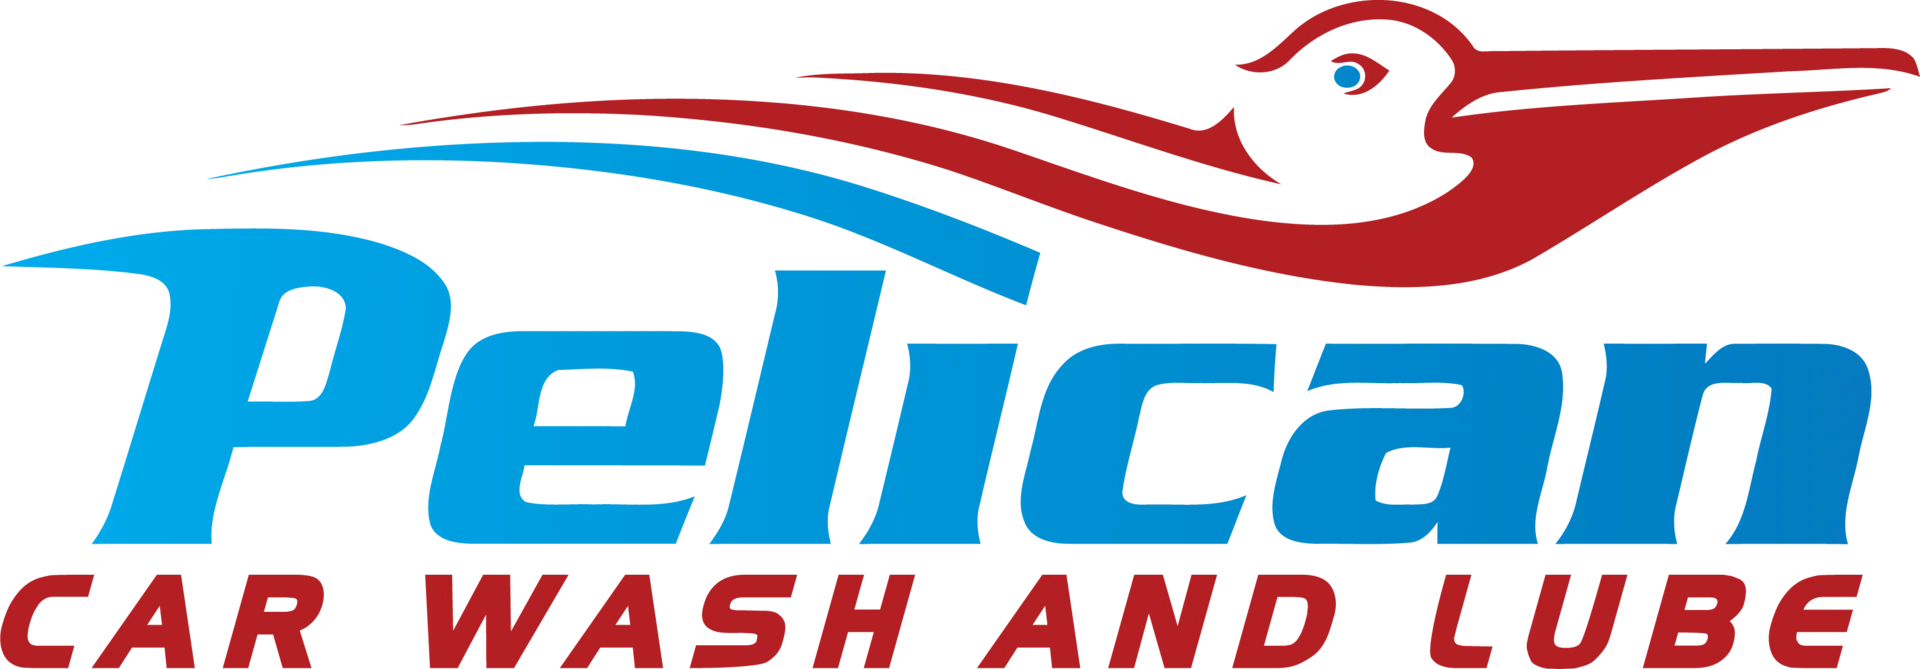 Pelican Car Wash